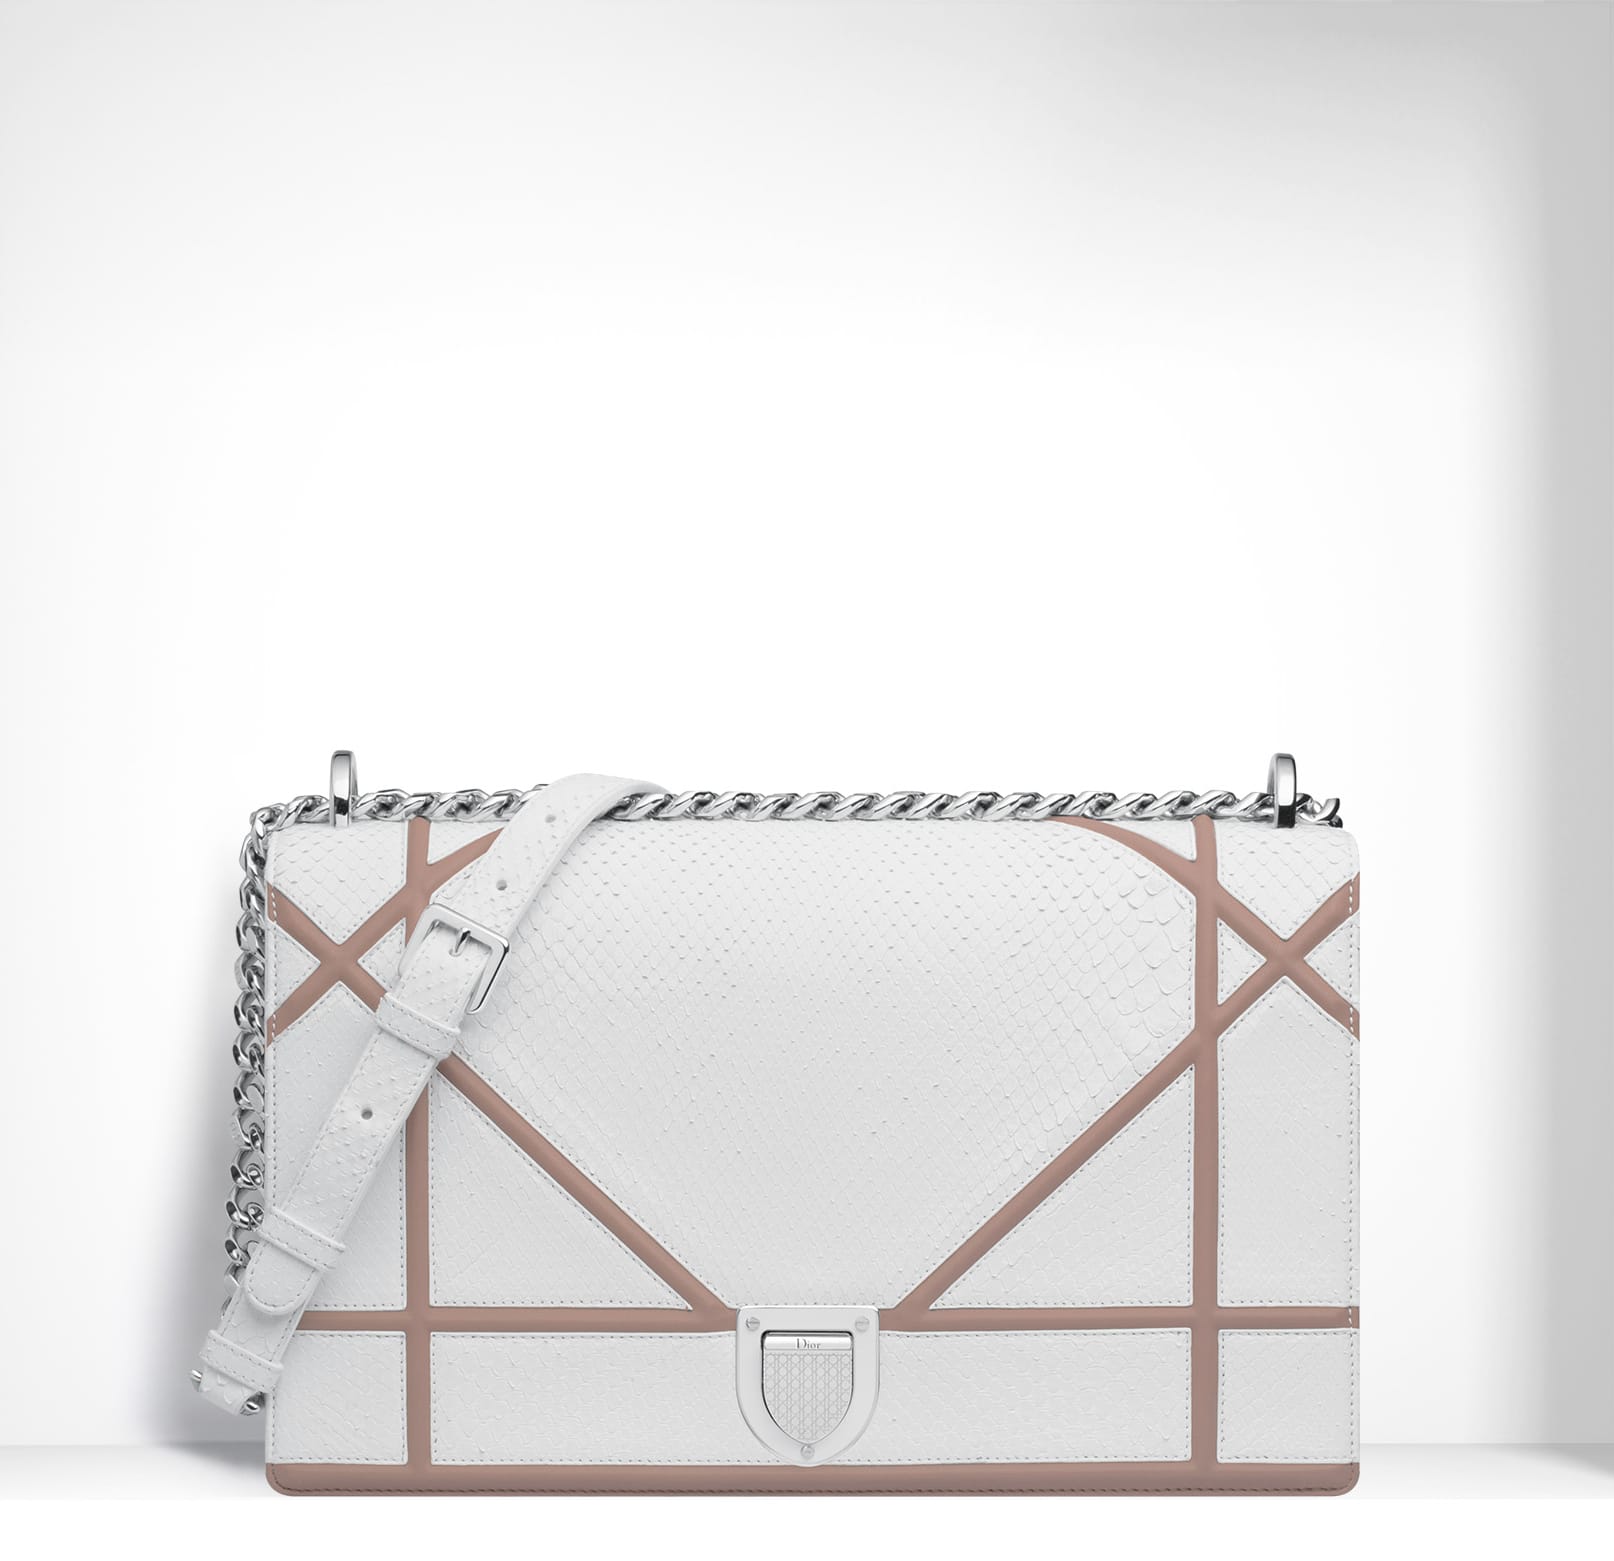 Dior Diorama vs Chanel Boy bag – Buy the goddamn bag